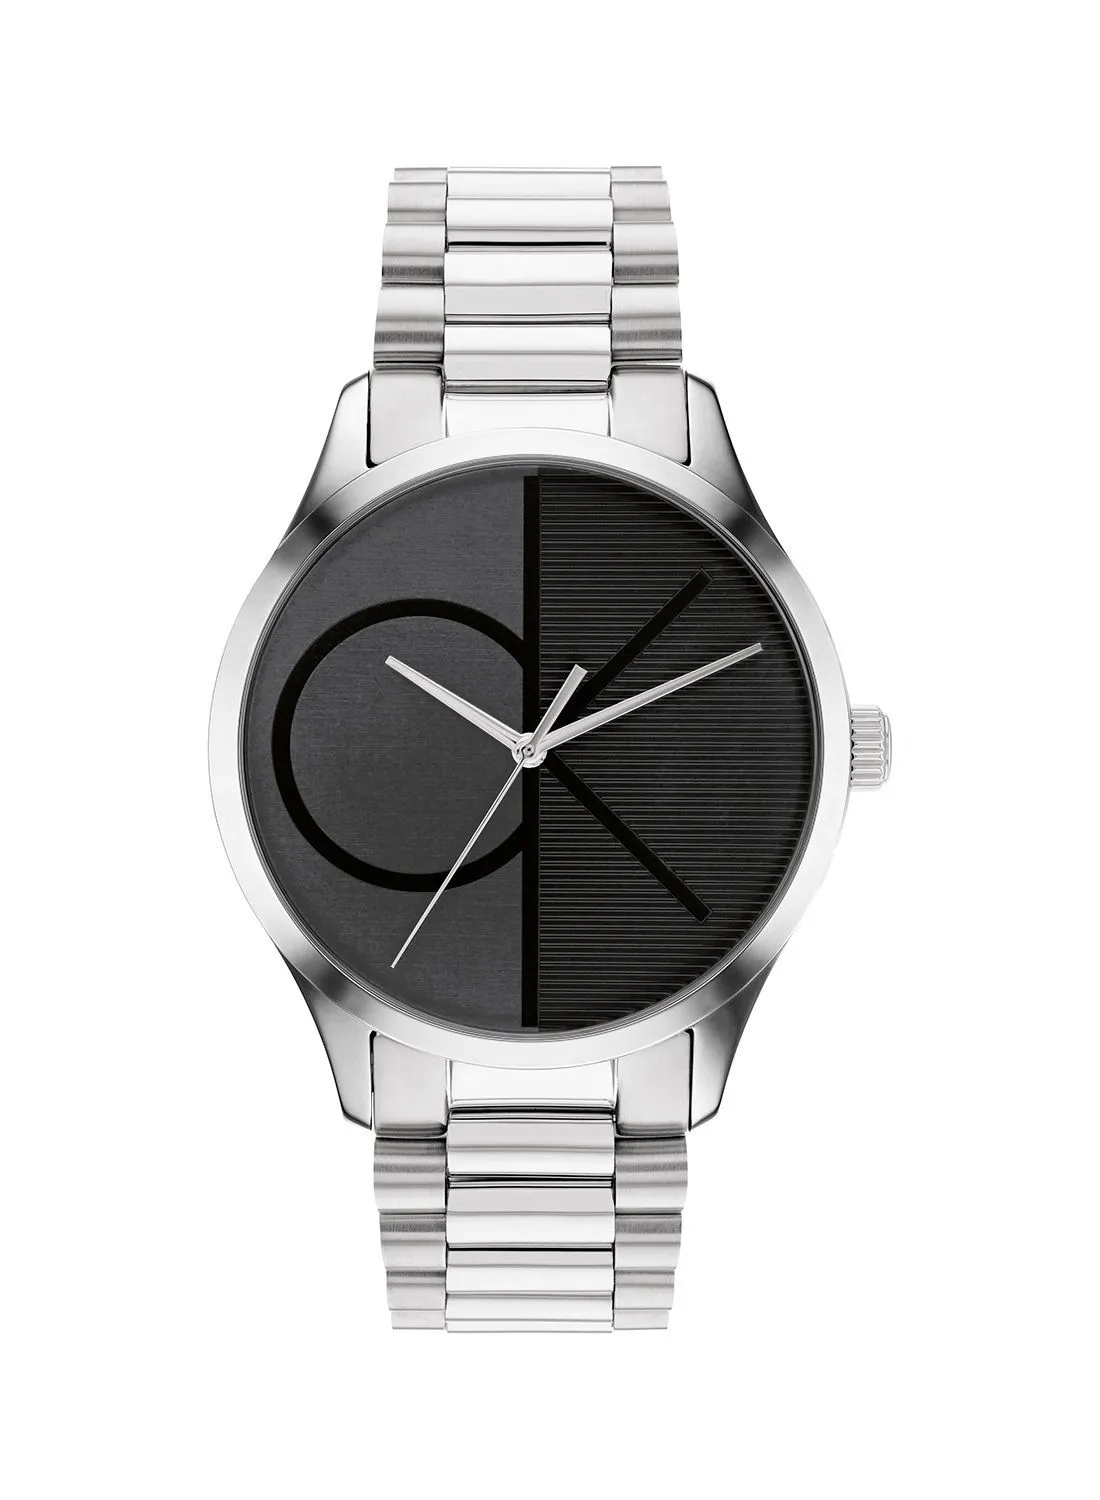 CALVIN KLEIN Iconic Unisex Stainless Steel Wrist Watch - 25200163